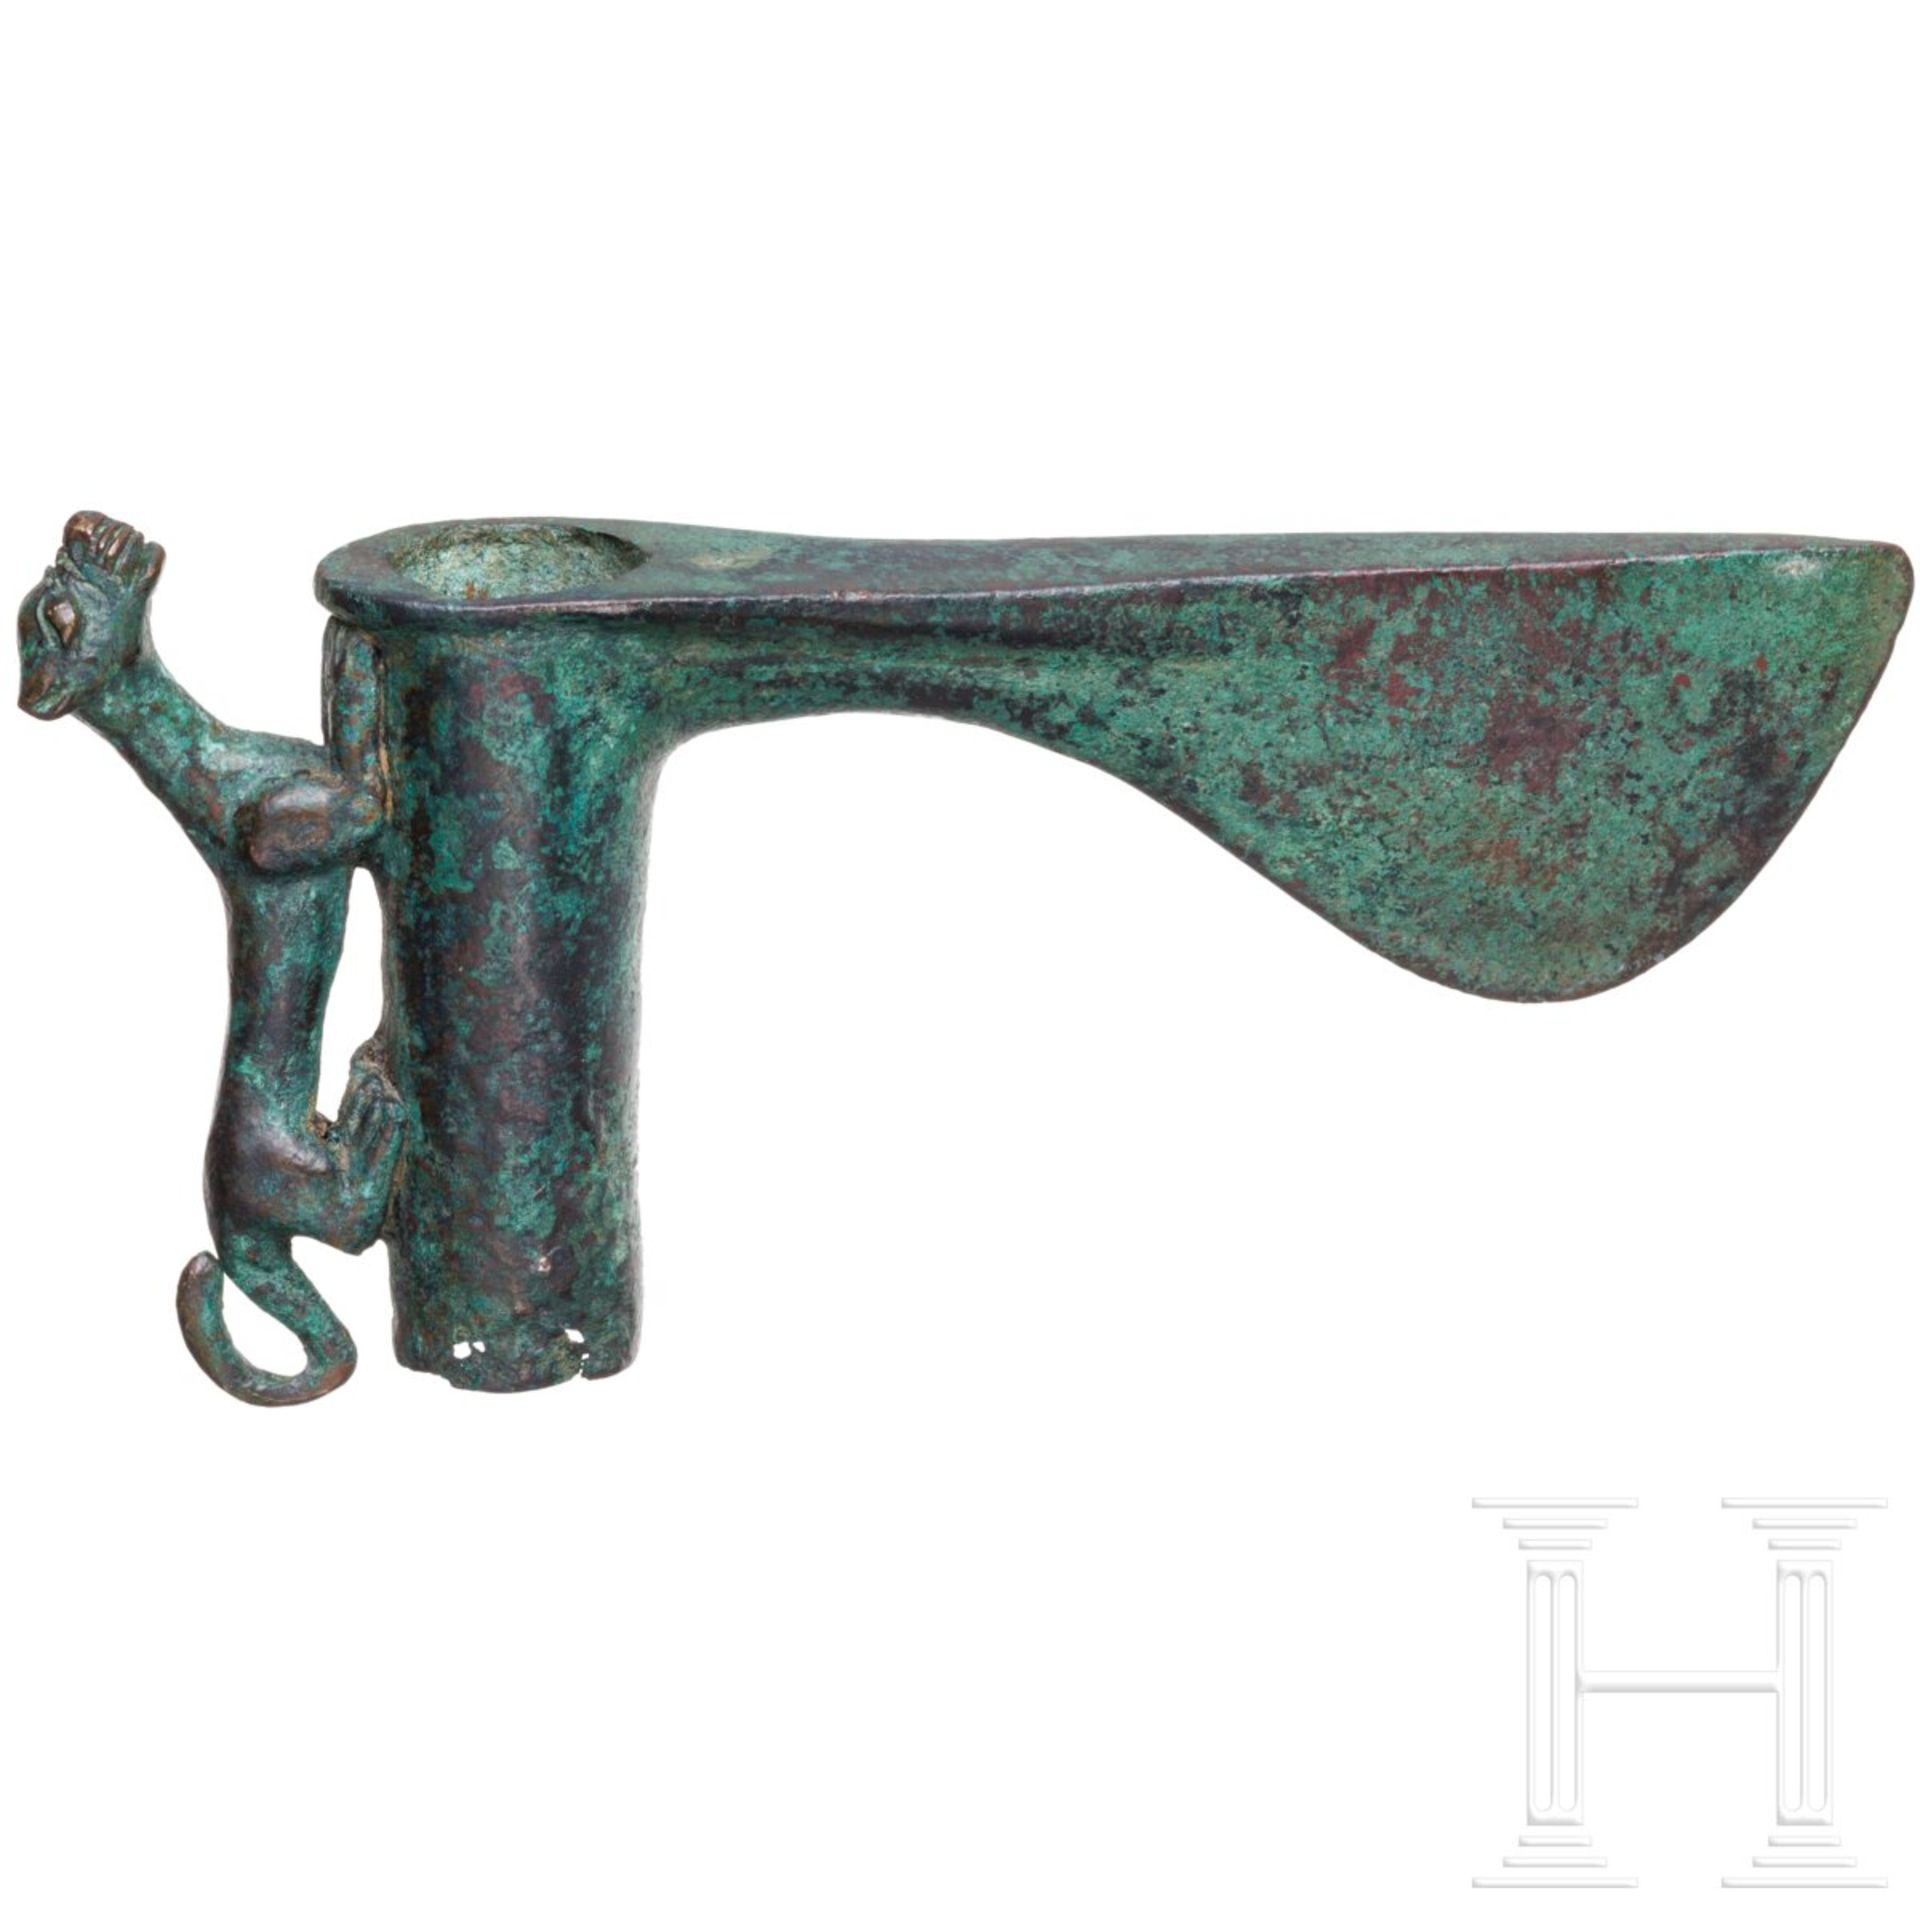 Altorientalische Bronzeaxt mit Tier an Schaftröhre, Mitte 3. Jtsd. v. Chr. - Image 2 of 3